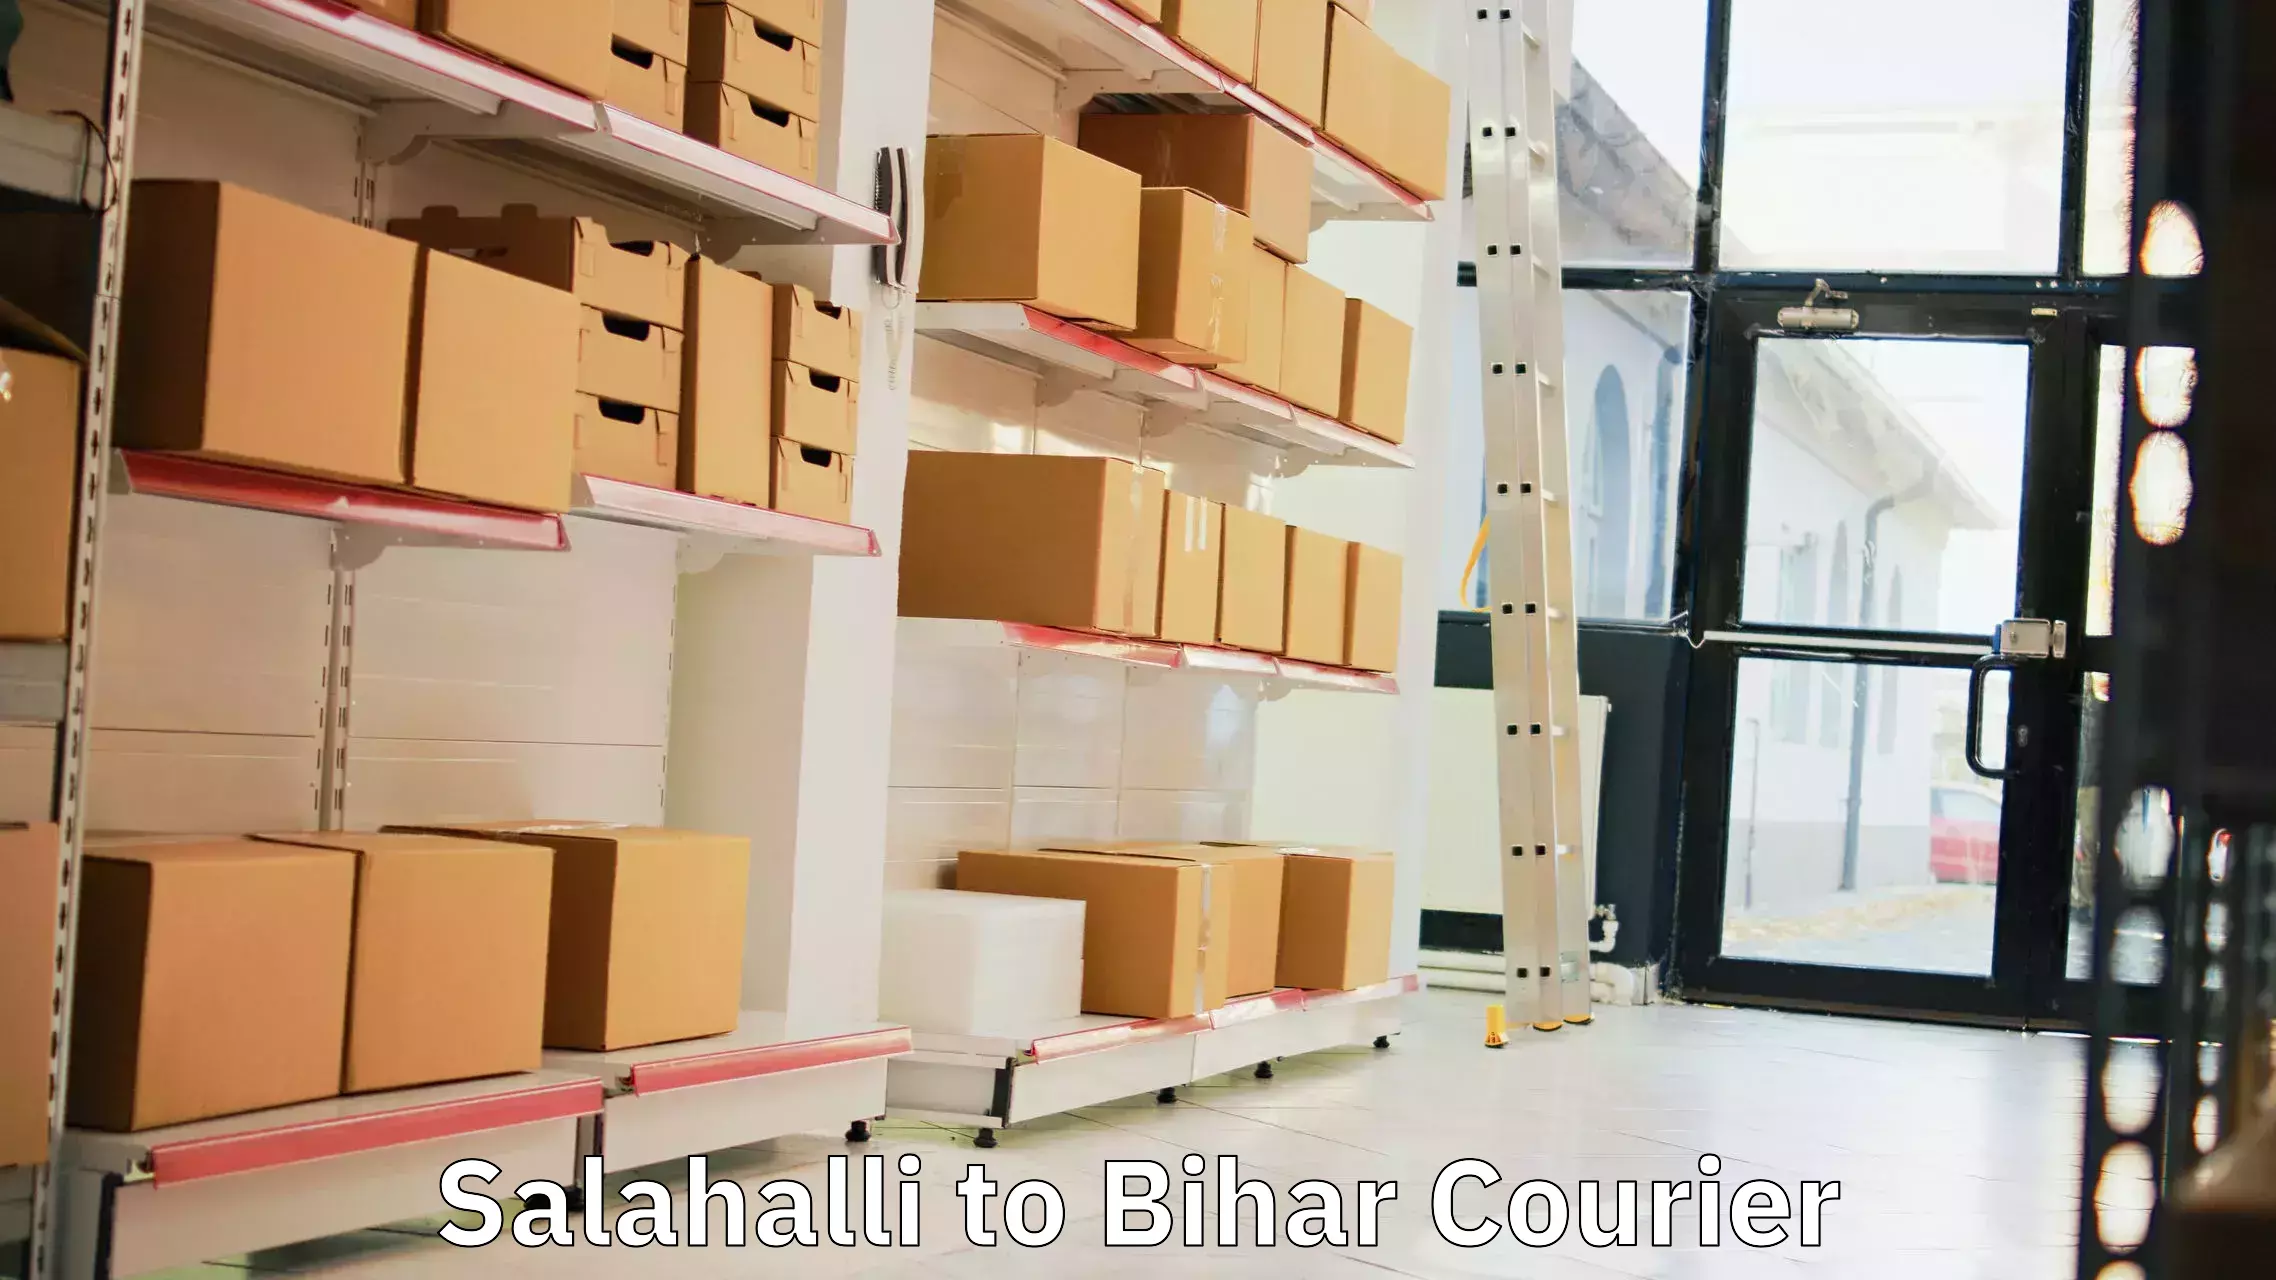 Reliable freight solutions Salahalli to Dhaka